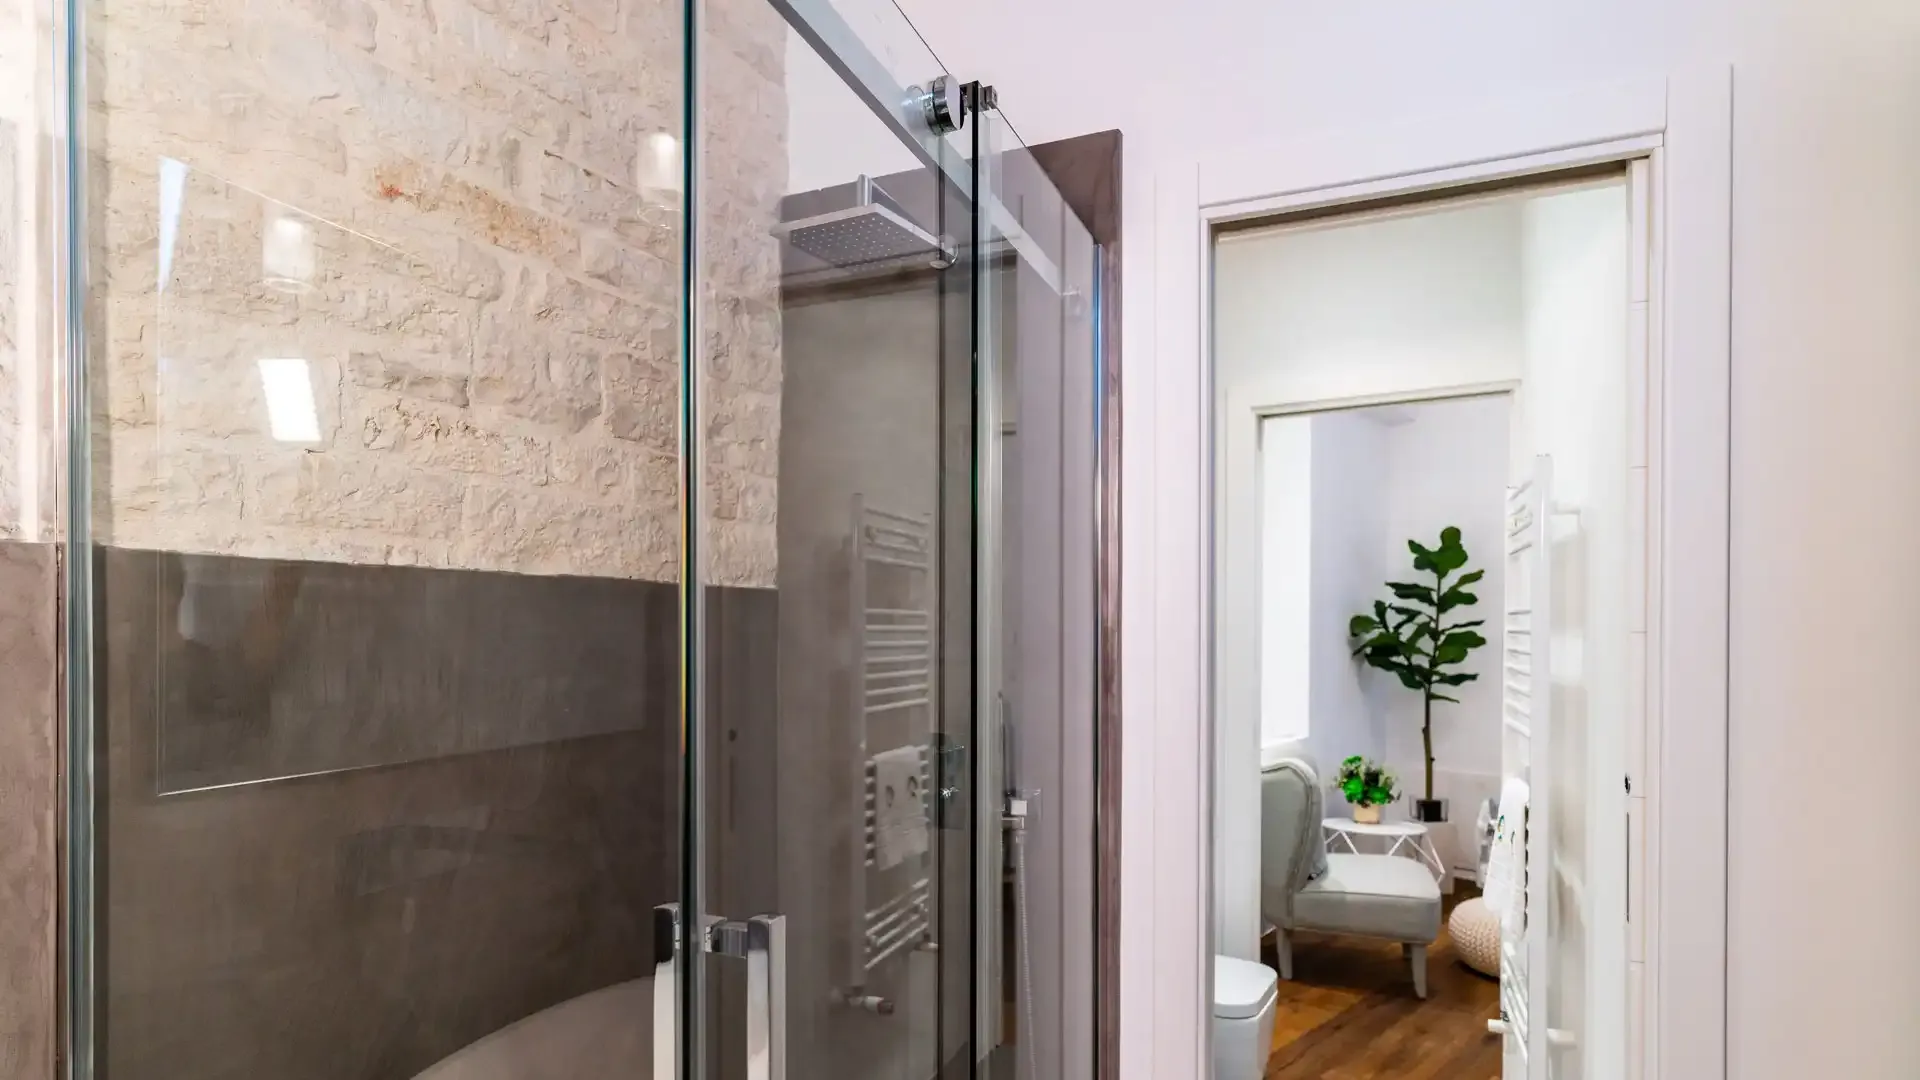 Salle de bain moderne avec douche en verre, murs en pierre et vue sur une pièce adjacente.